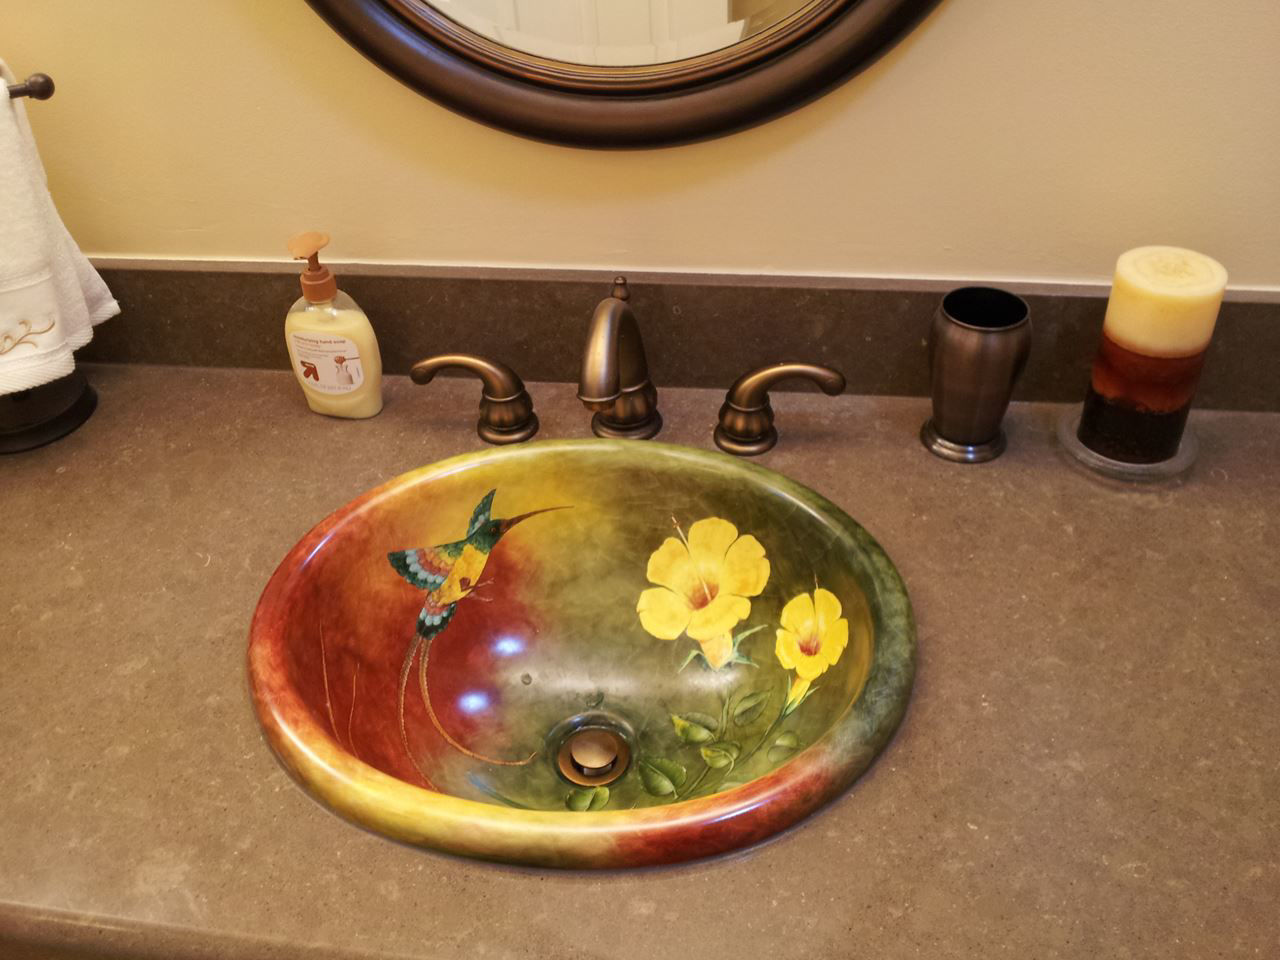 Bathroom sink painted under